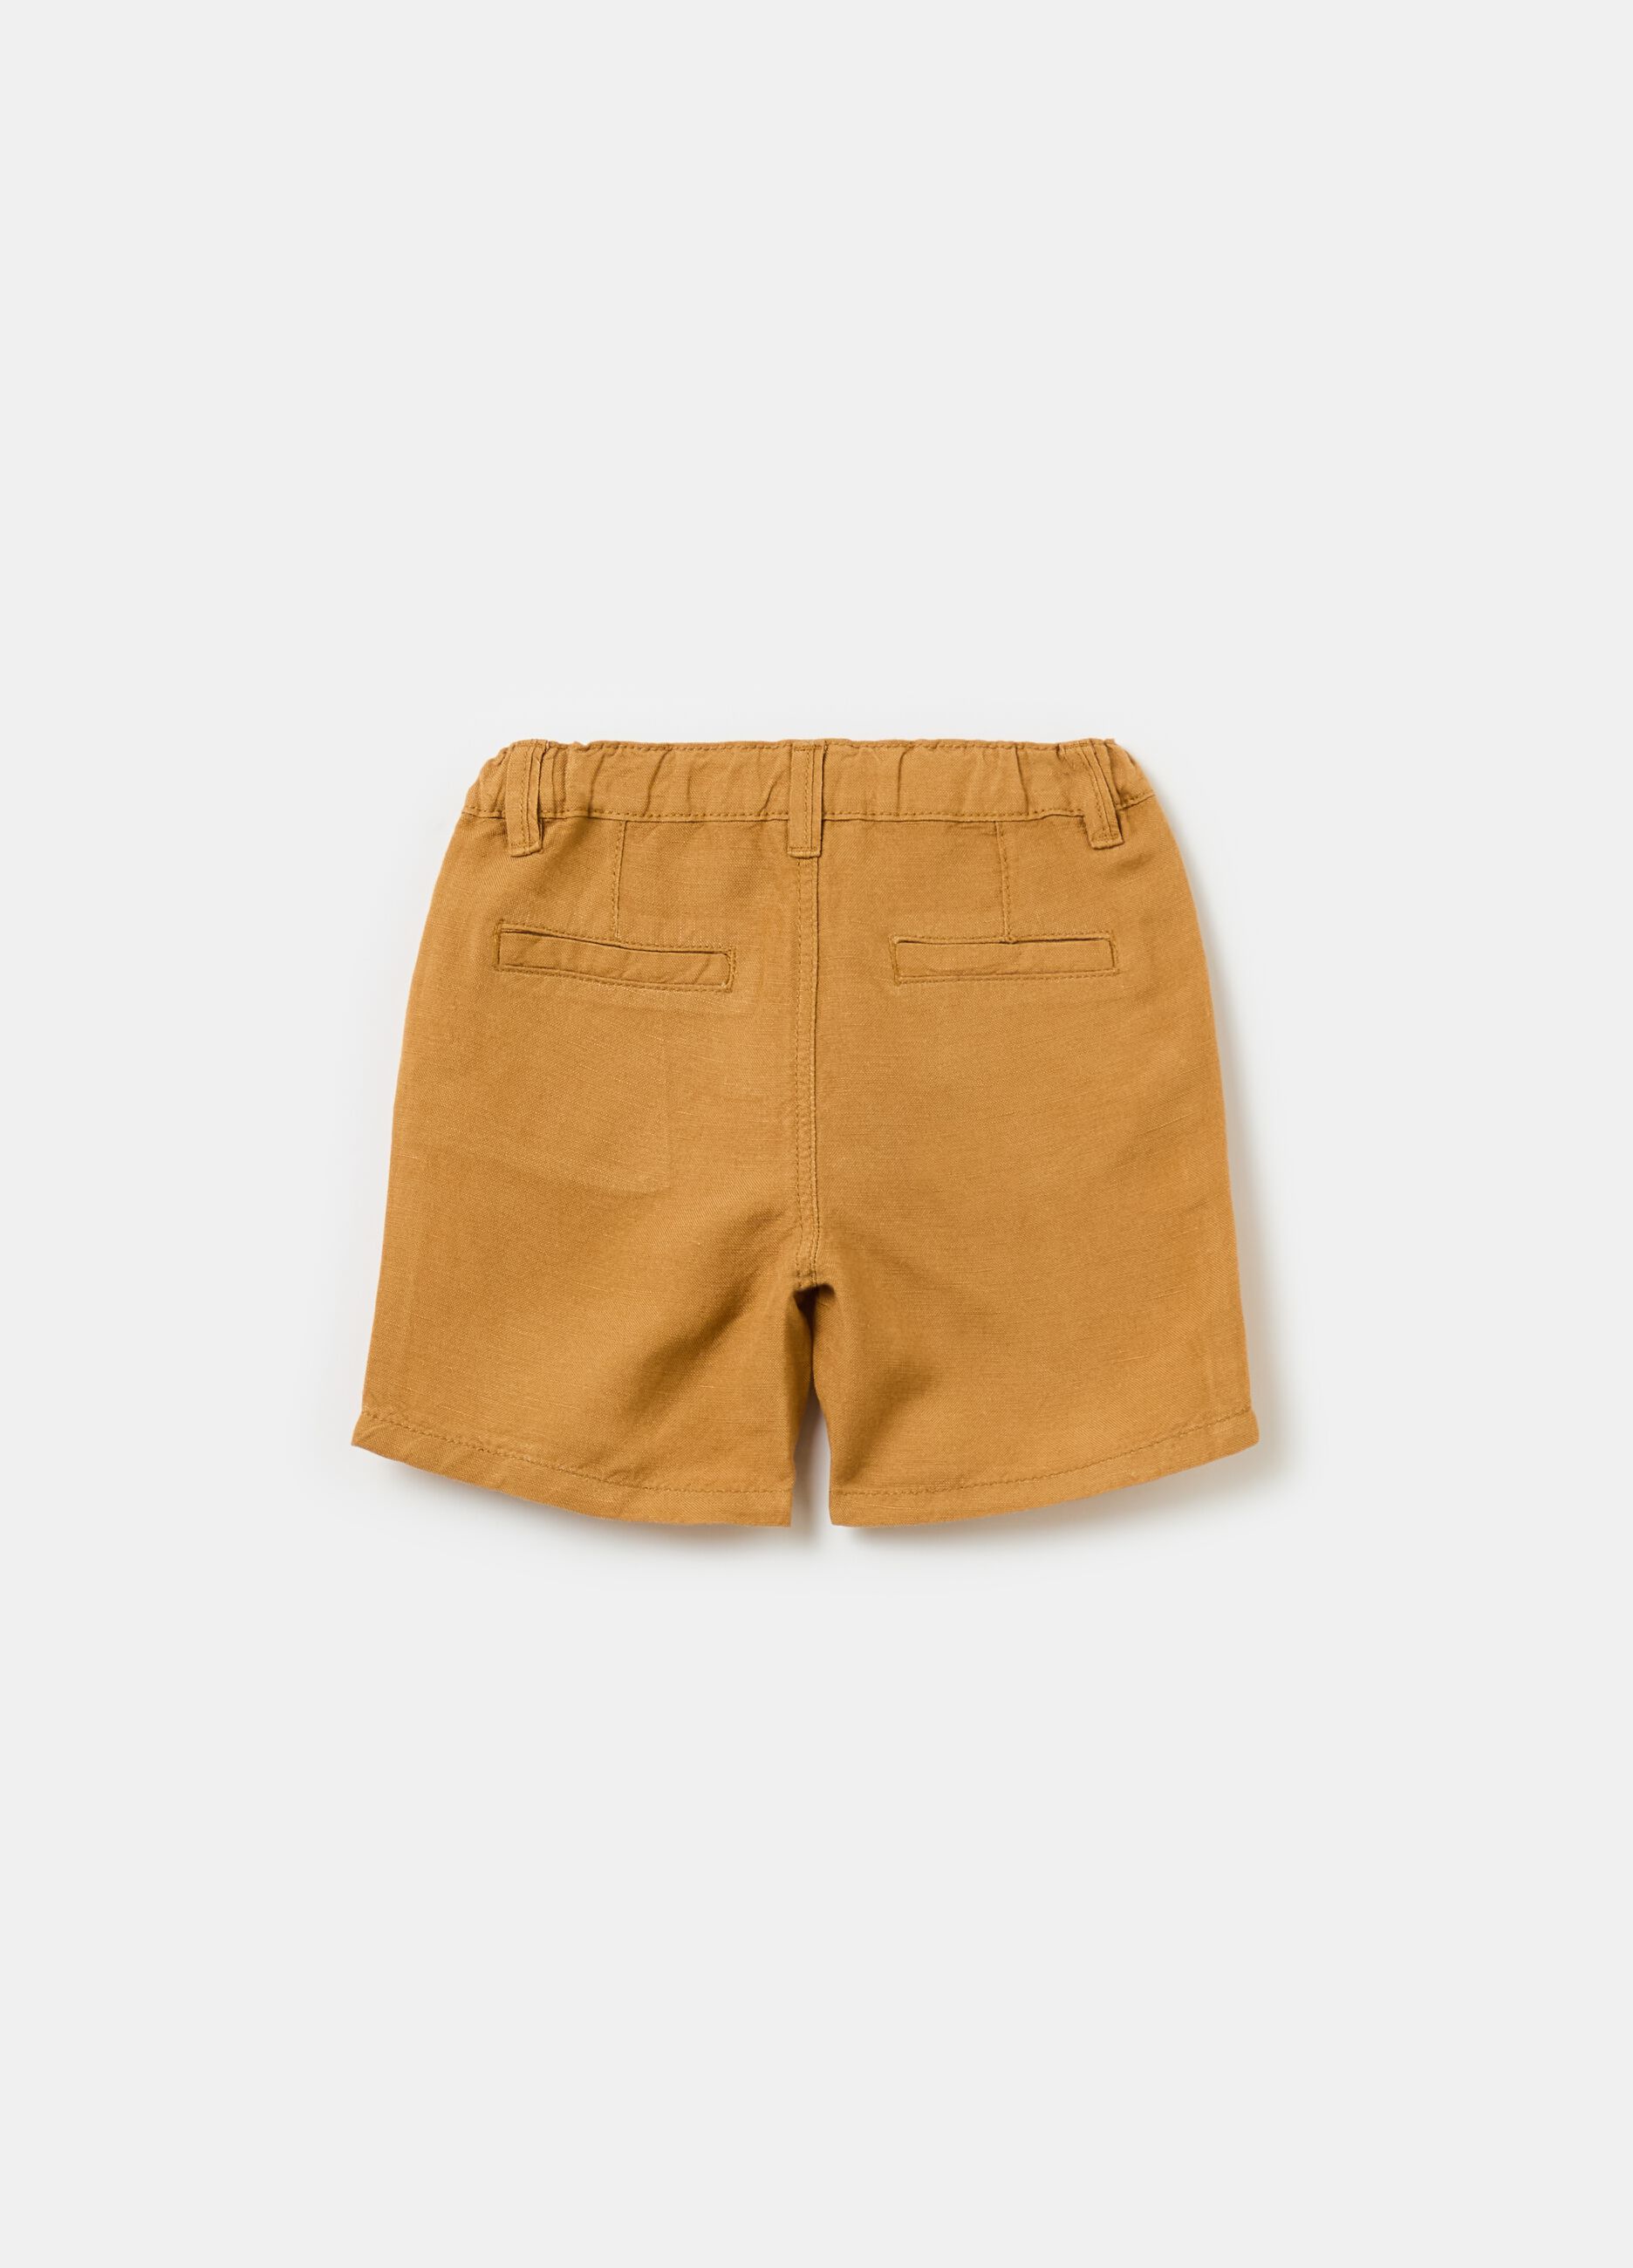 Viscose and linen Bermuda shorts with pockets